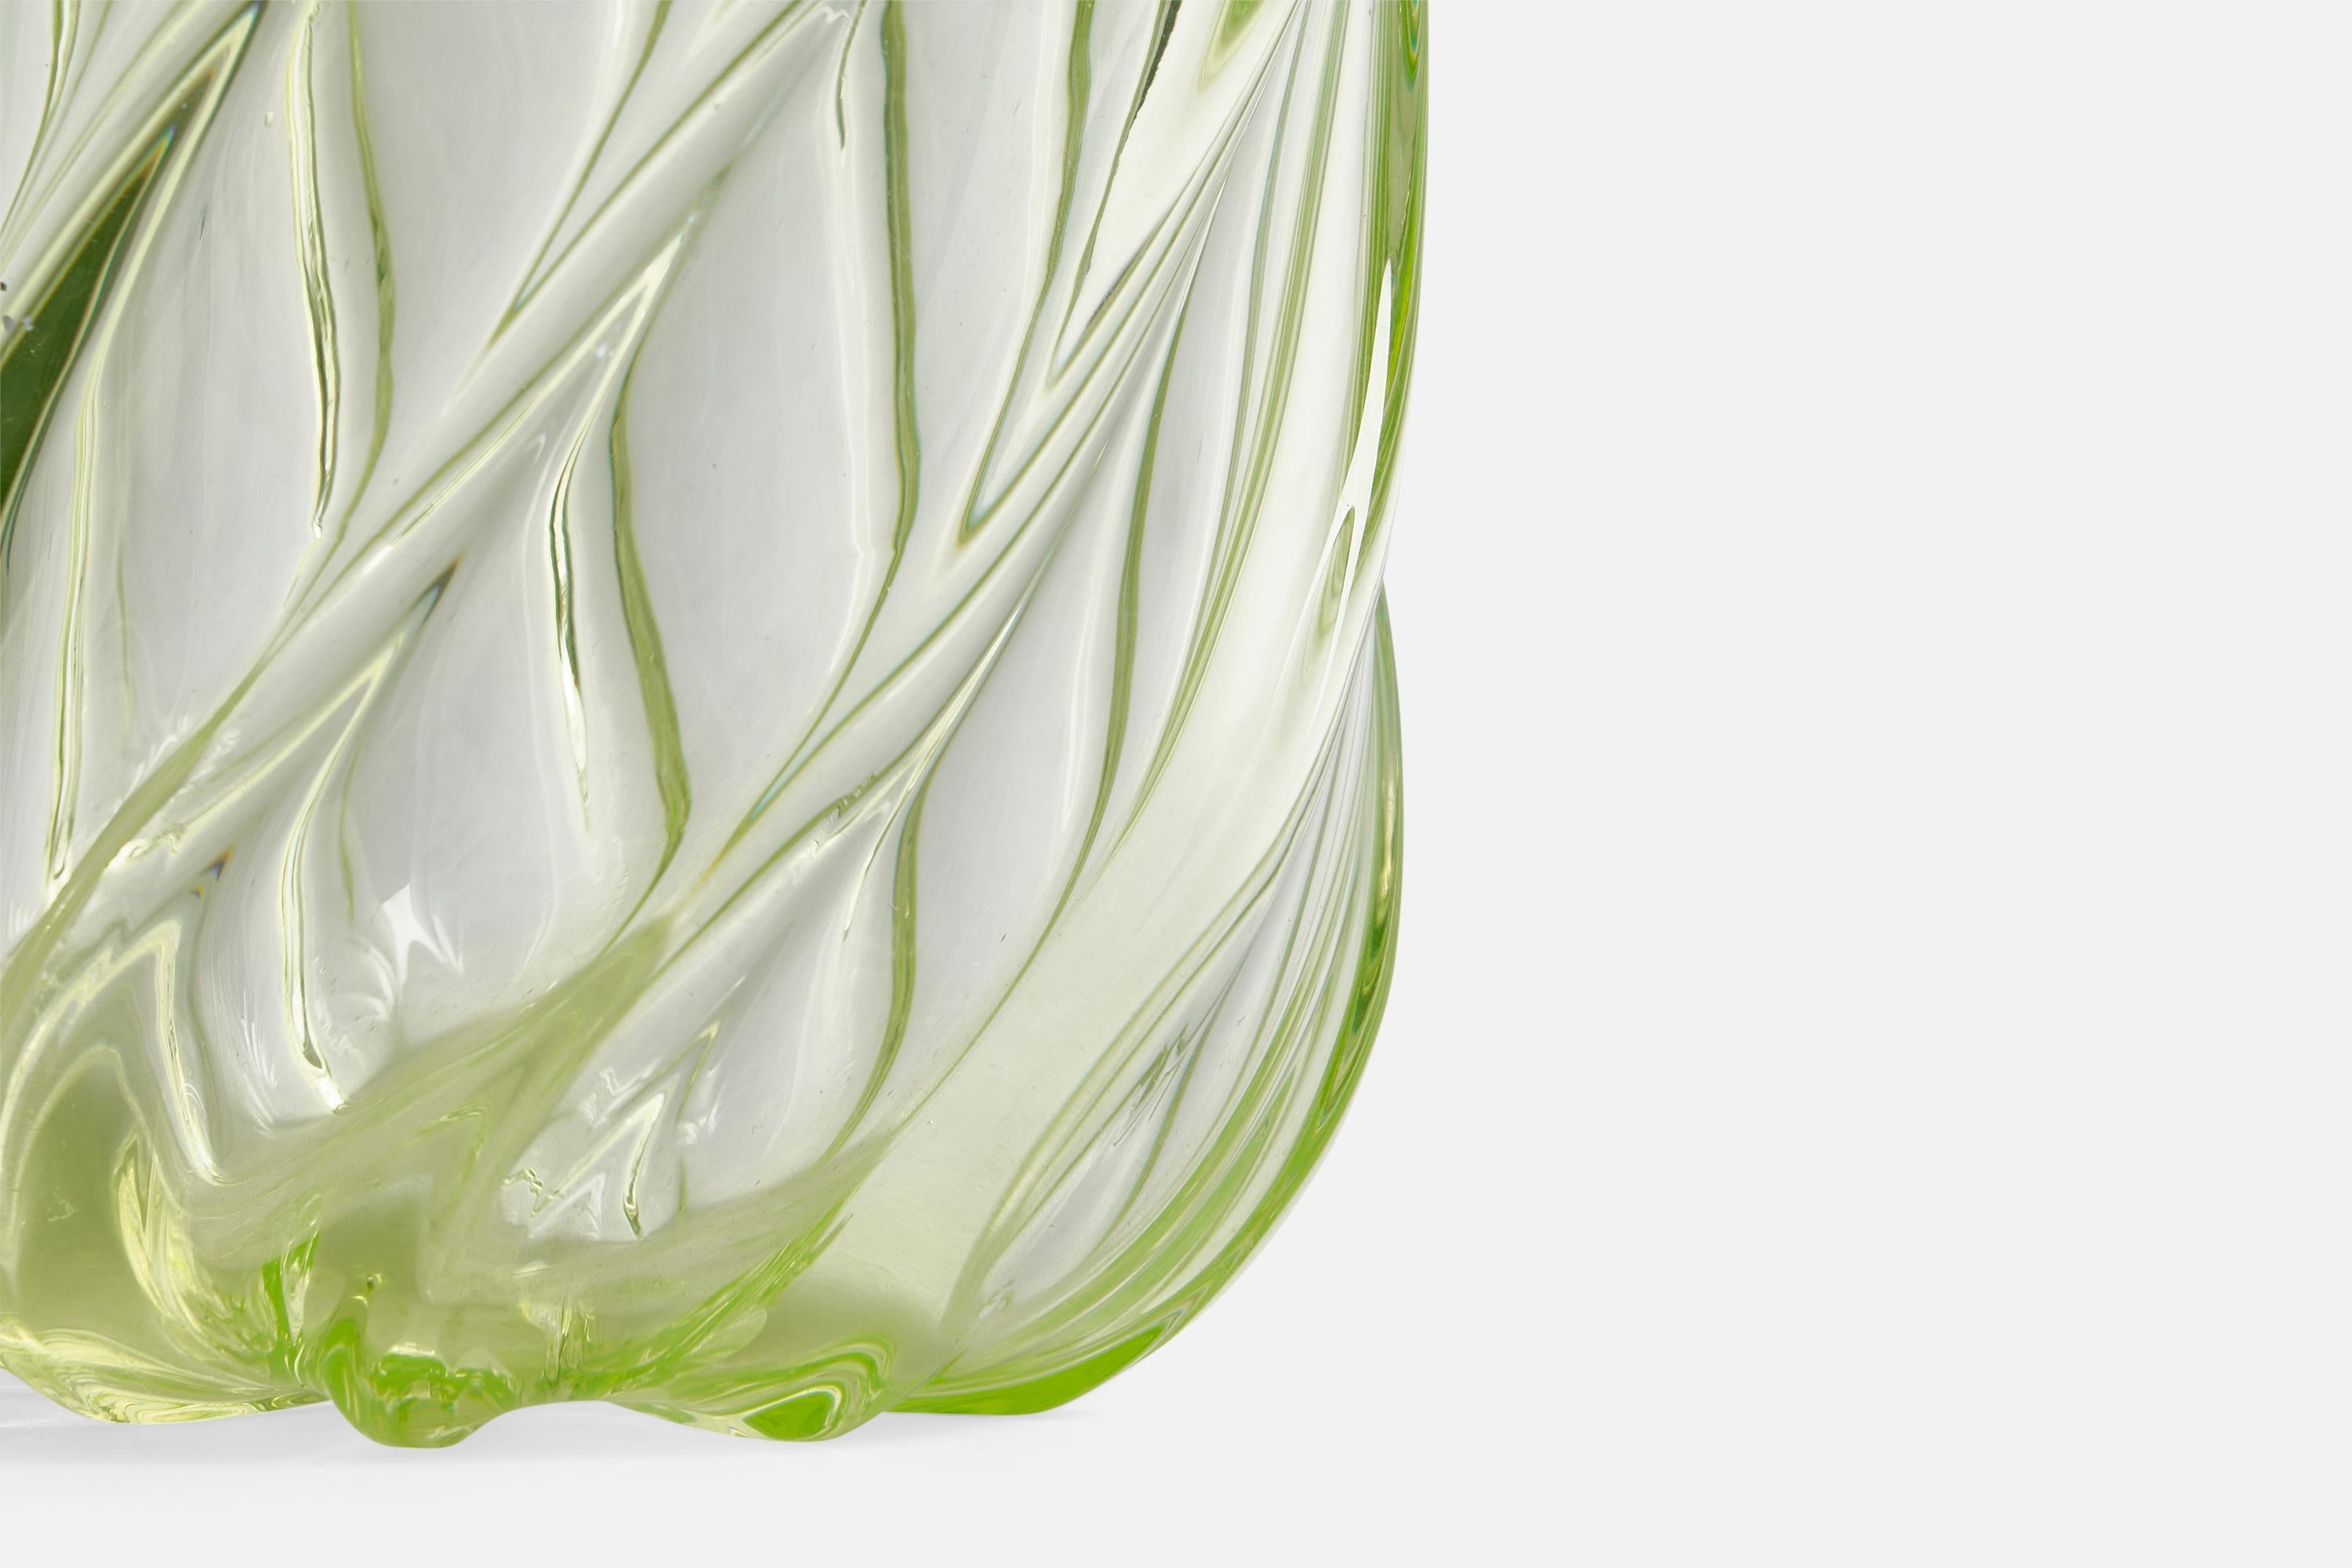 Swedish Reijmyre Glasbruk, Vase, Glass, Sweden, 1940s For Sale